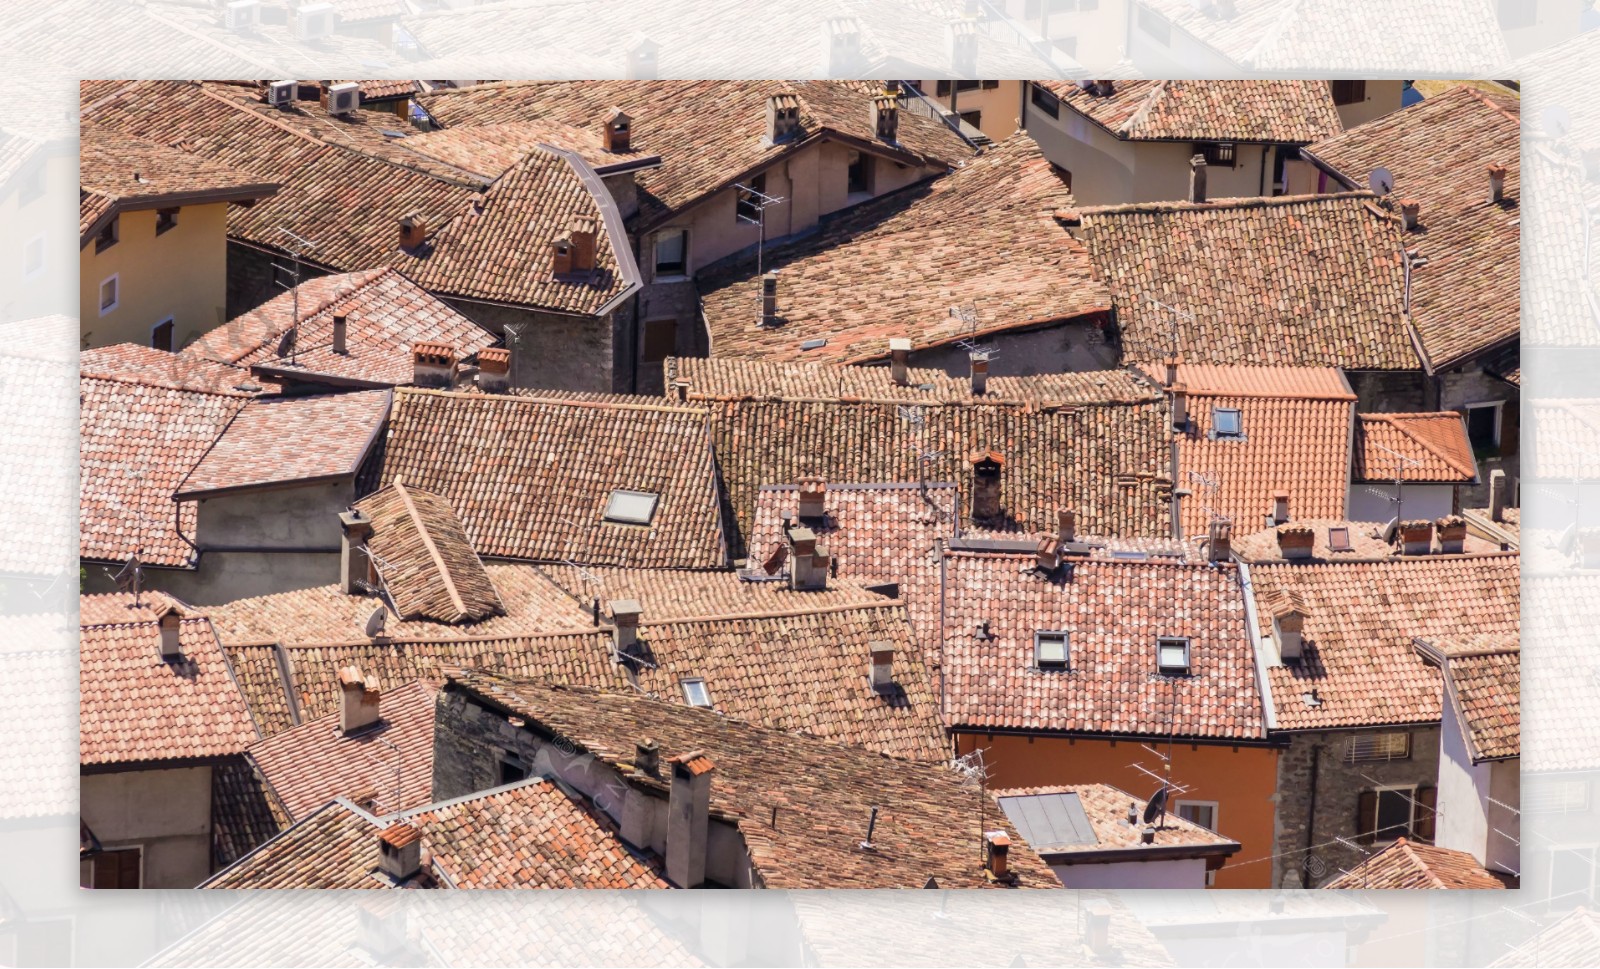 意大利旧城区屋顶